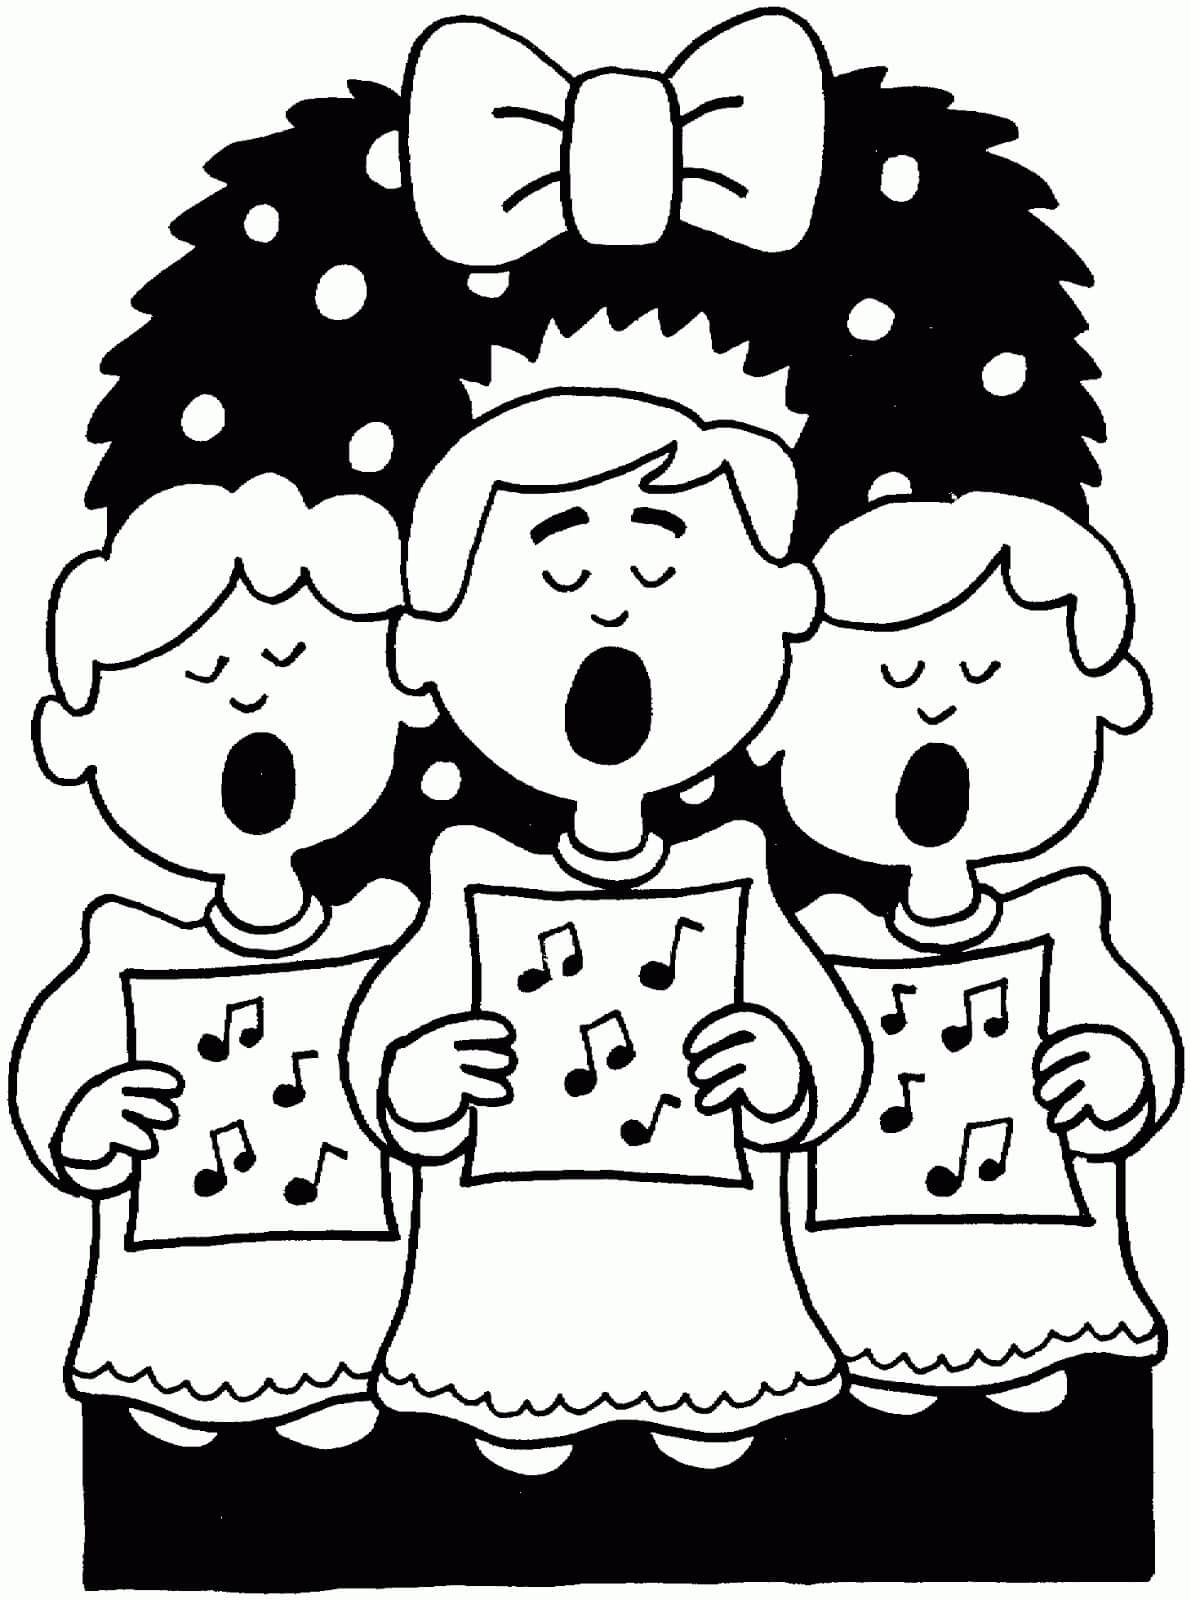 Cantando la Canción de Navidad